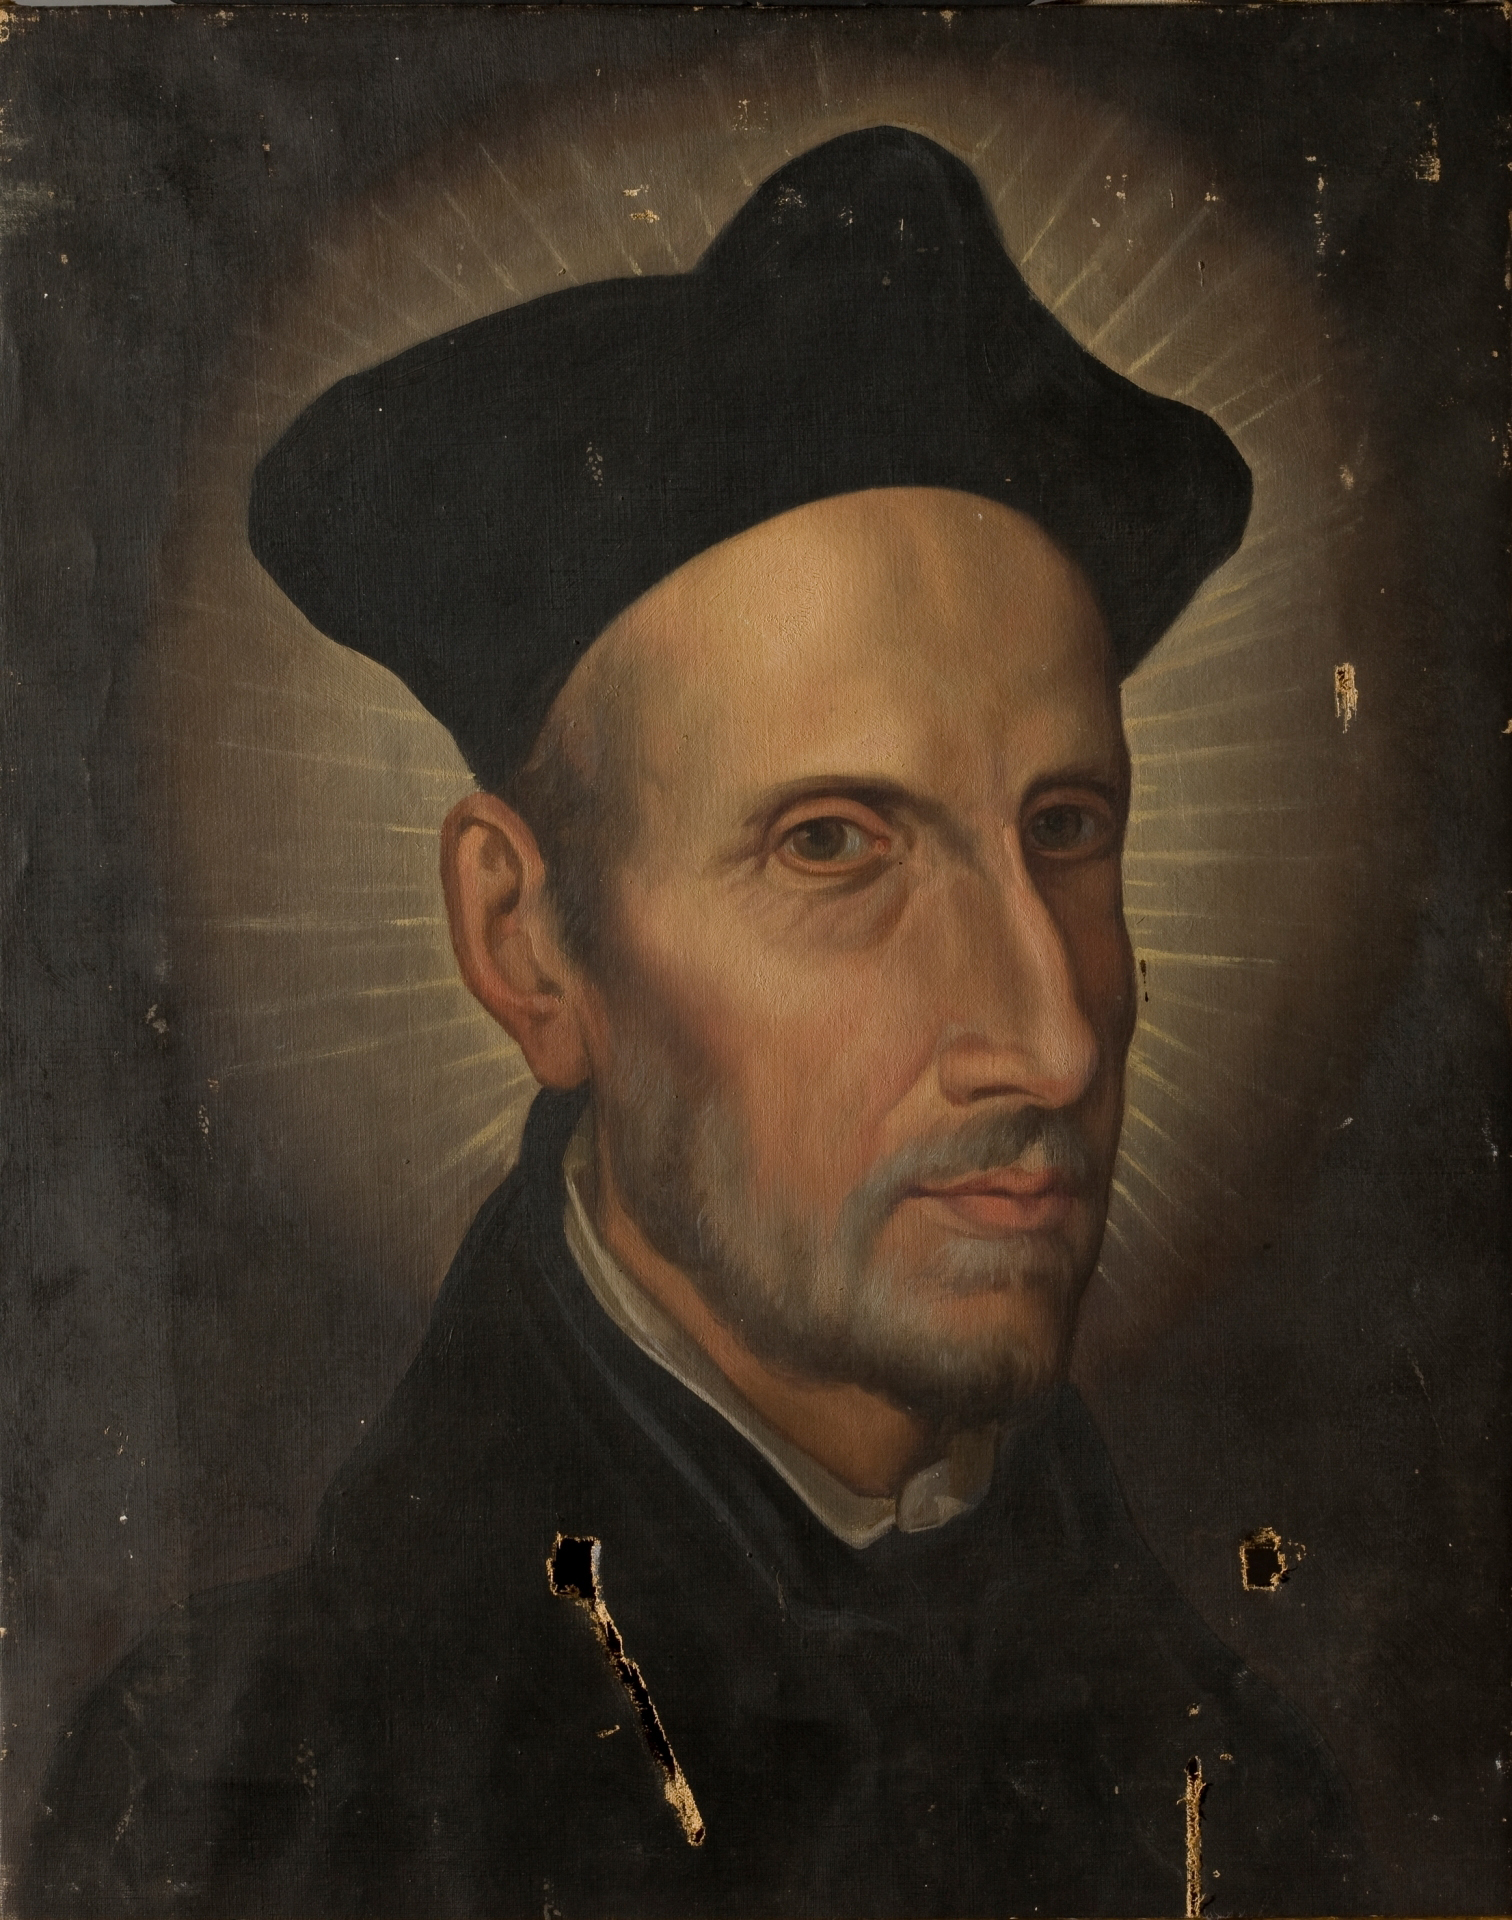 Retrato de San Francisco de Borja por el pintor Díaz de Carreño.